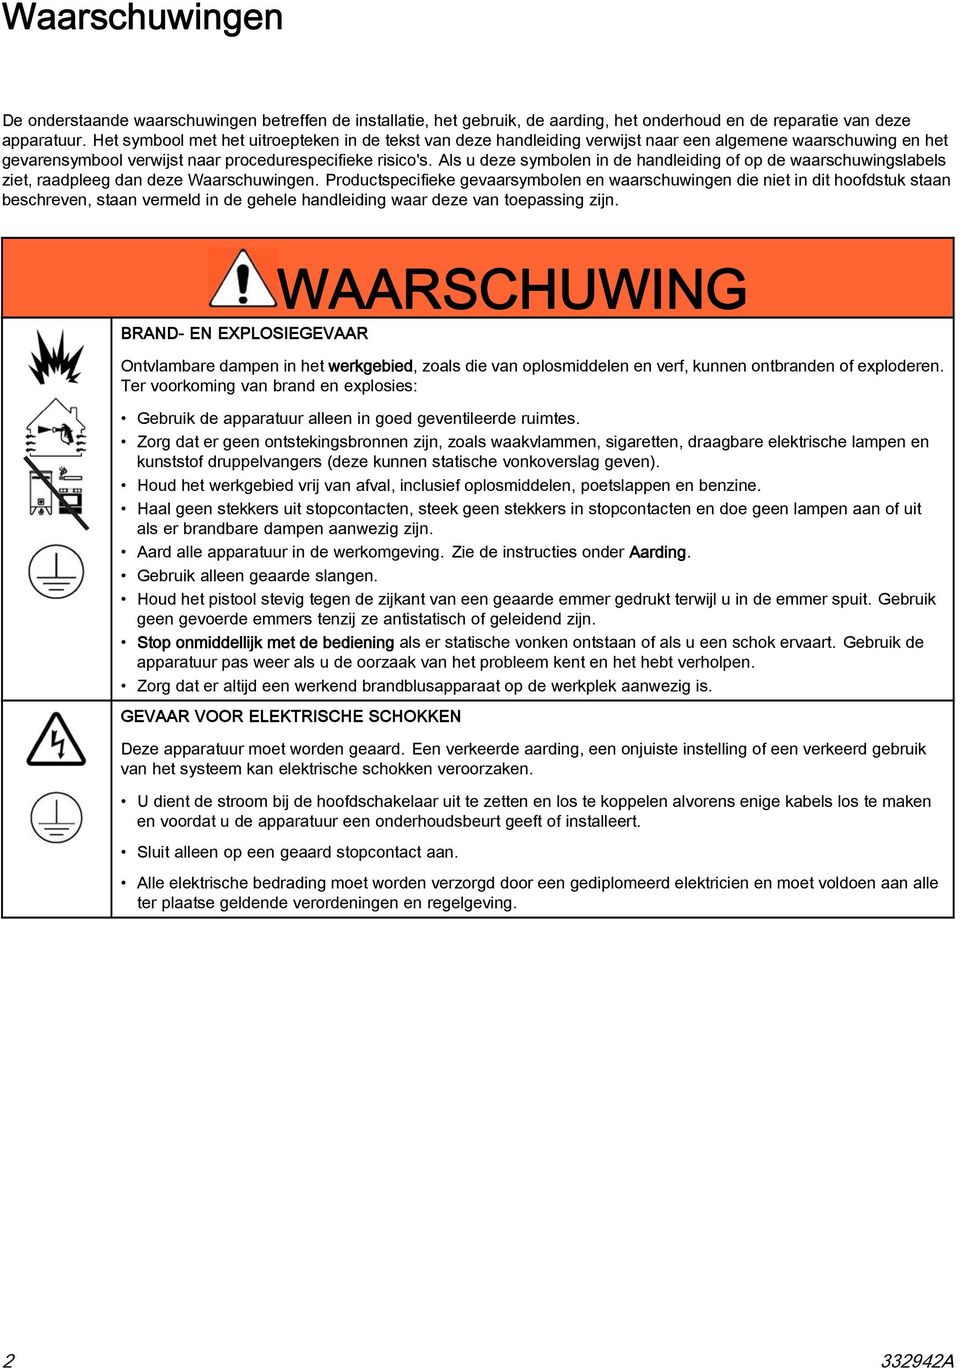 Als u deze symbolen in de handleiding of op de waarschuwingslabels ziet, raadpleeg dan deze Waarschuwingen.